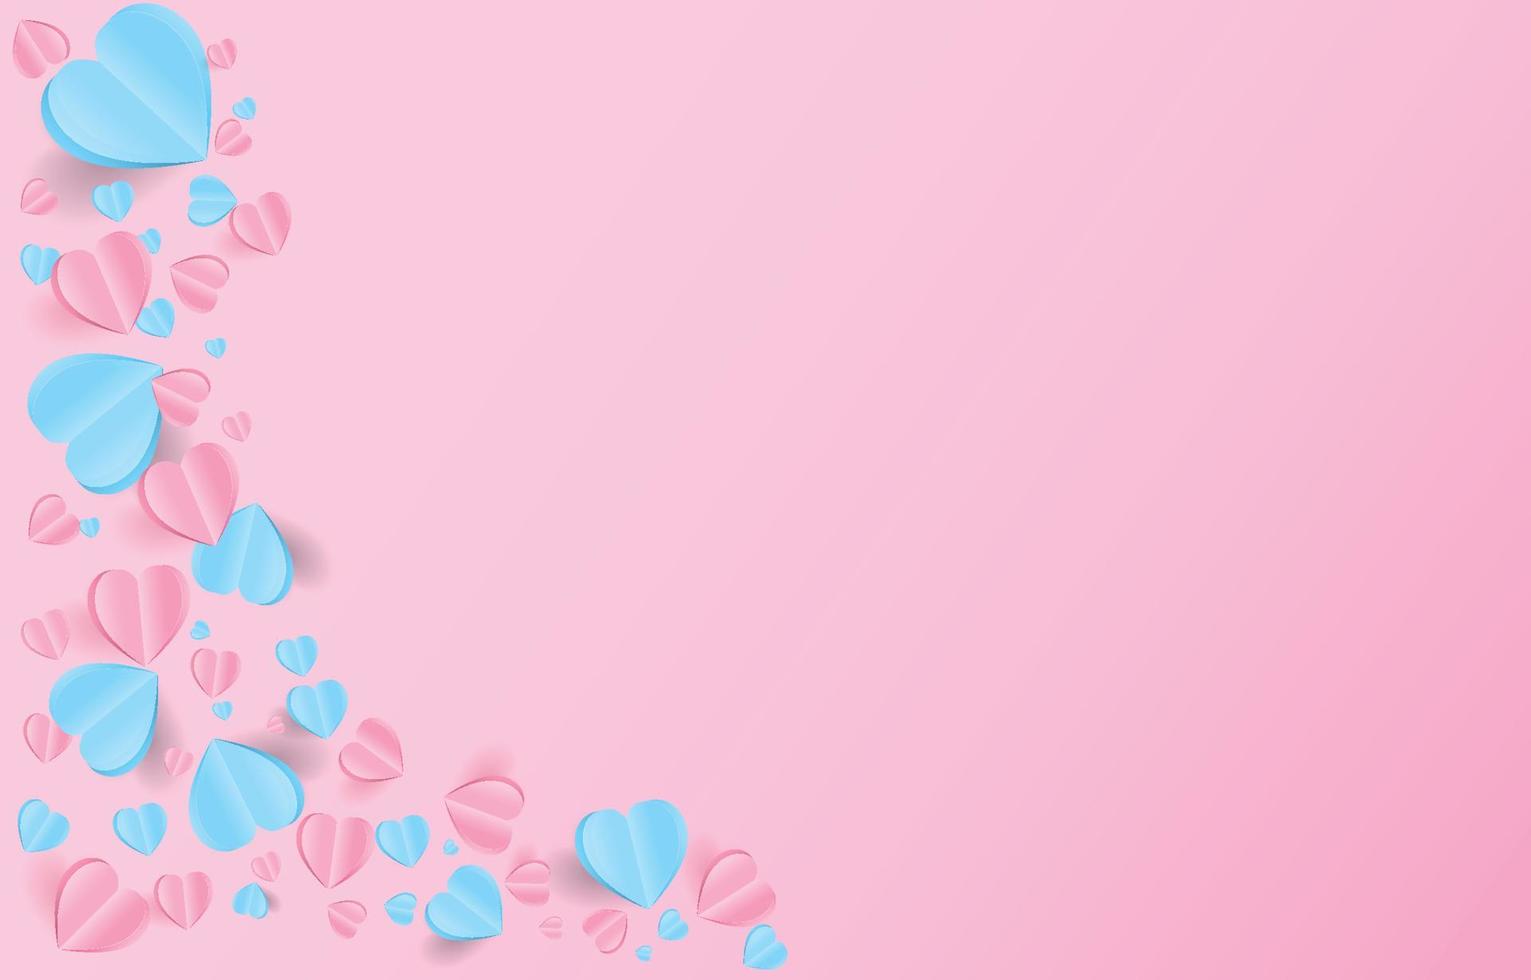 elementi tagliati in carta a forma di cuore che volano su sfondo rosa e dolce. simboli vettoriali d'amore per il giorno di San Valentino felice, disegno della cartolina d'auguri di compleanno.